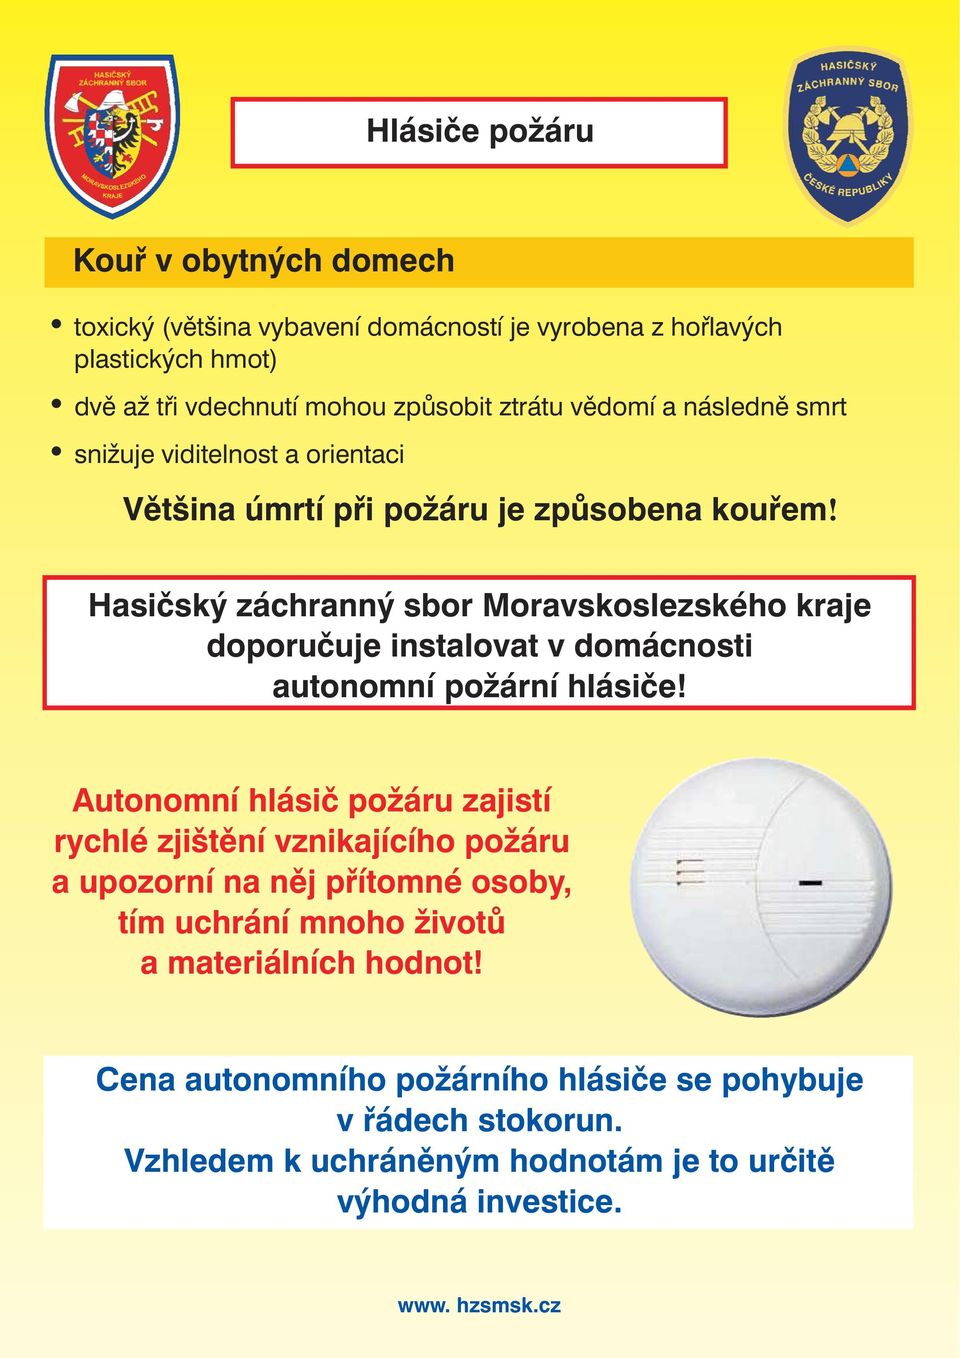 Hasičský záchranný sbor Moravskoslezského kraje doporučuje instalovat v domácnosti autonomní požární hlásiče!